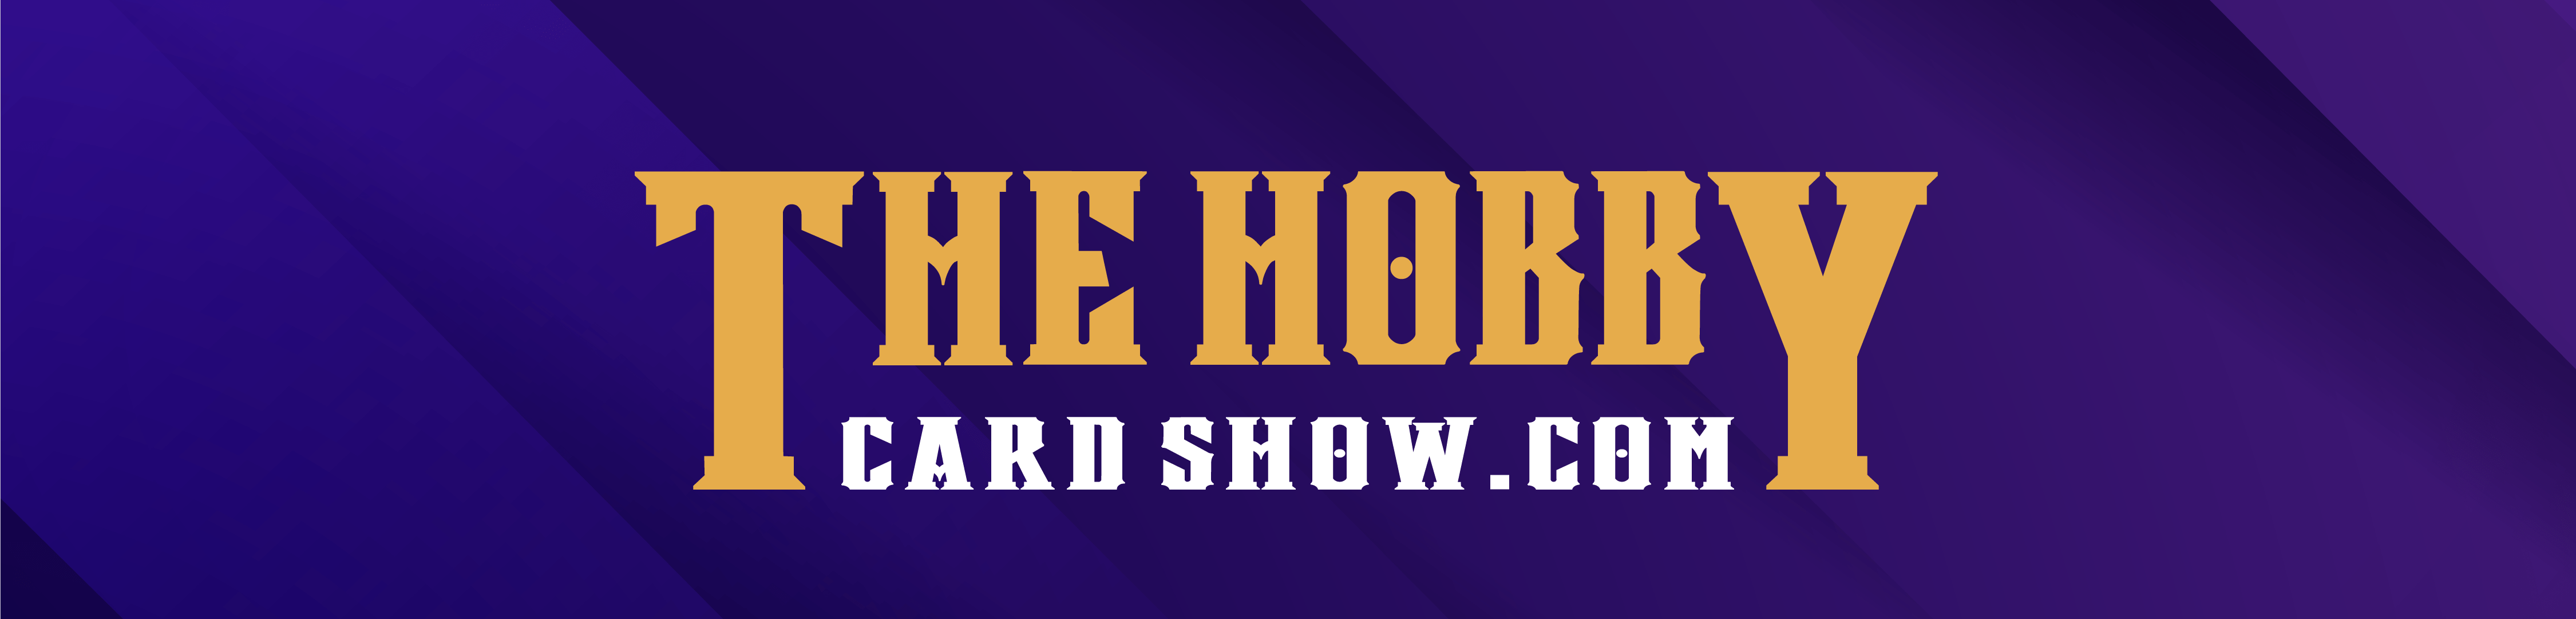 The Hobby Card Show/AR Events, LLC